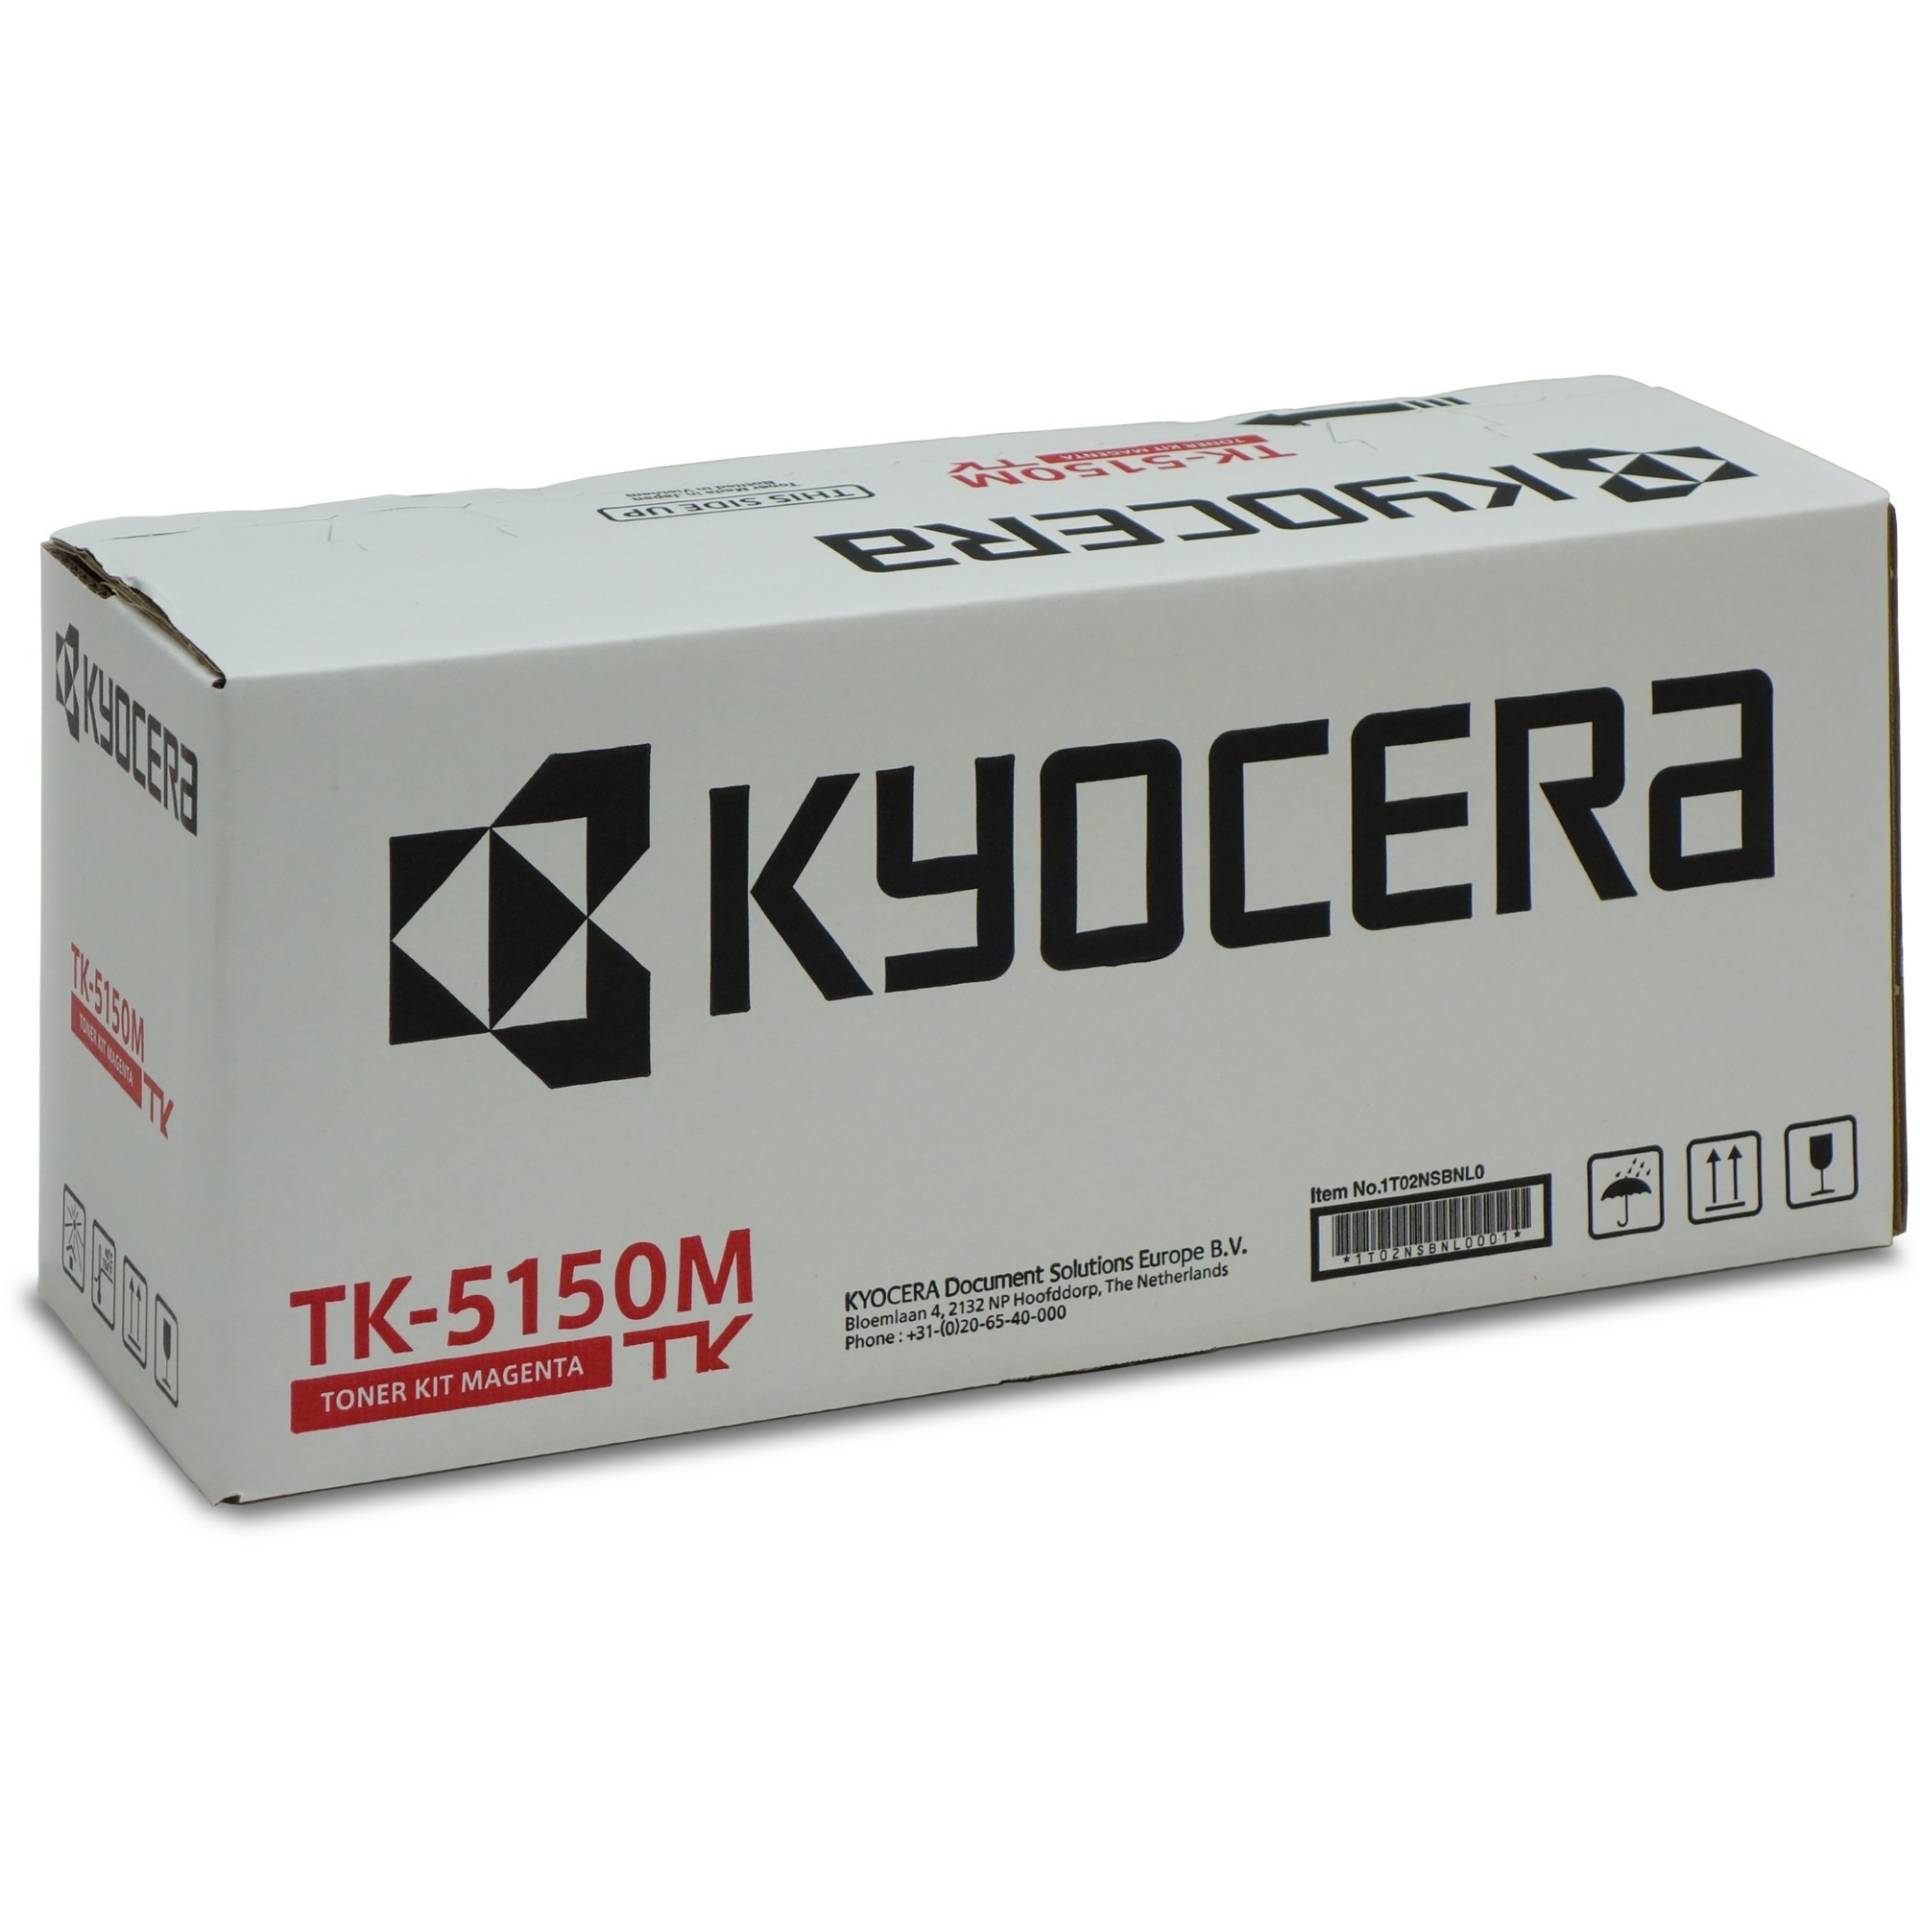 Toner magenta TK-5150M von Kyocera